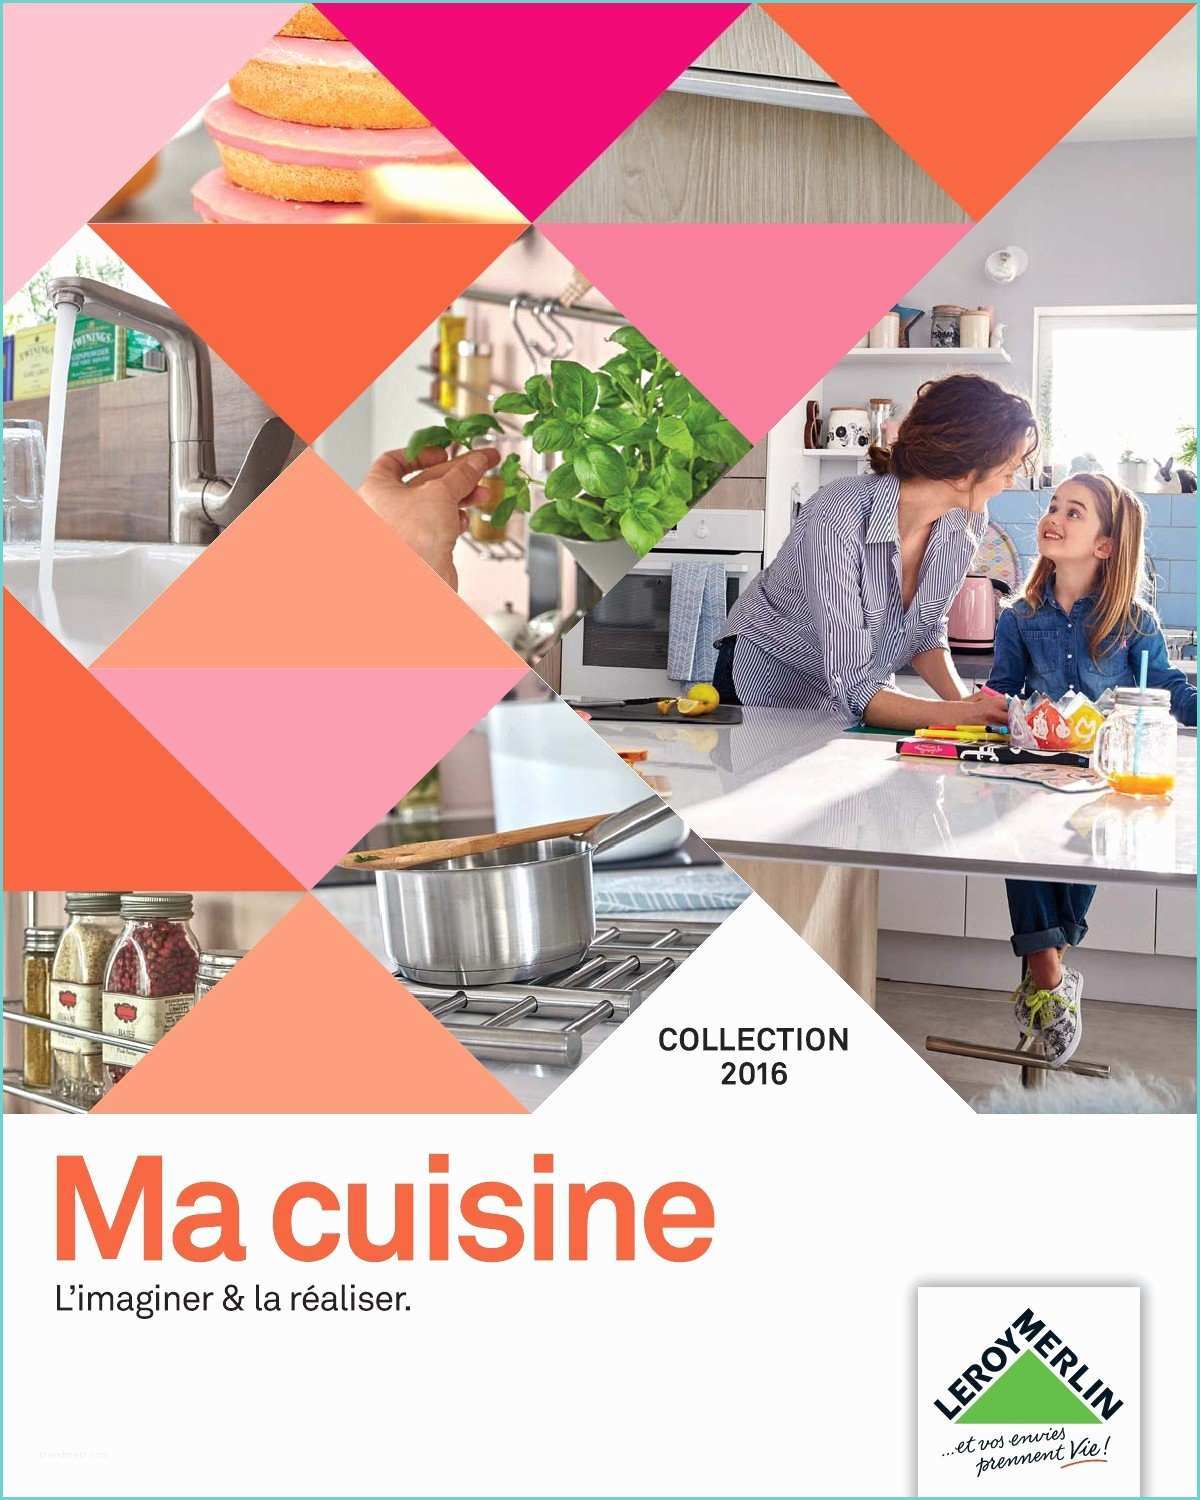 Fly Cuisine Catalogue 2017 Catalogue Cuisine Leroy Merlin 2018 Xx74